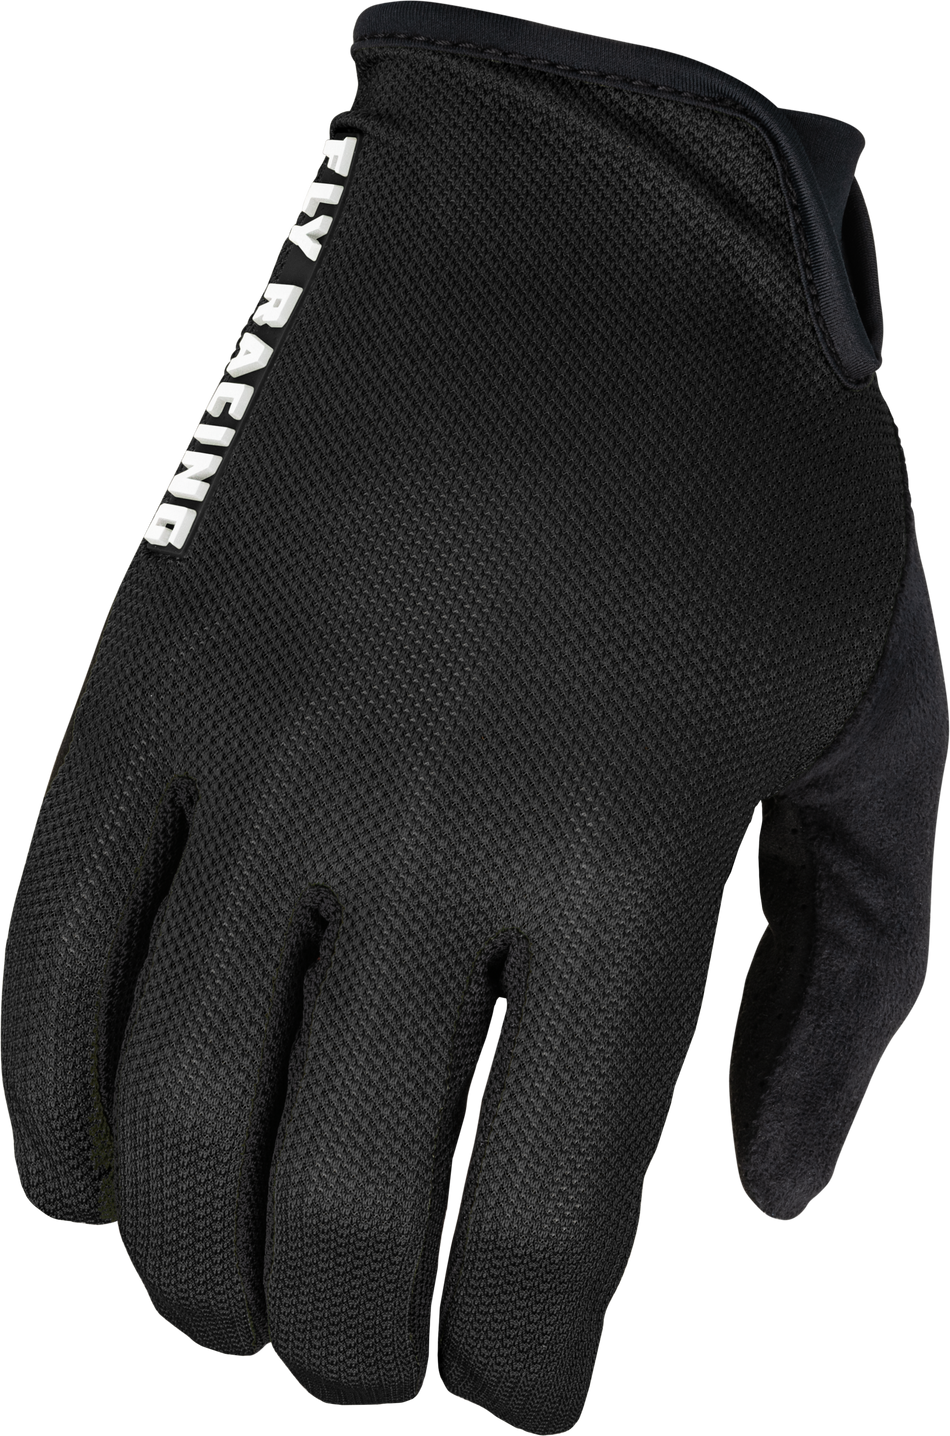 FLY RACING Mesh Gloves Black 2x 375-3002X